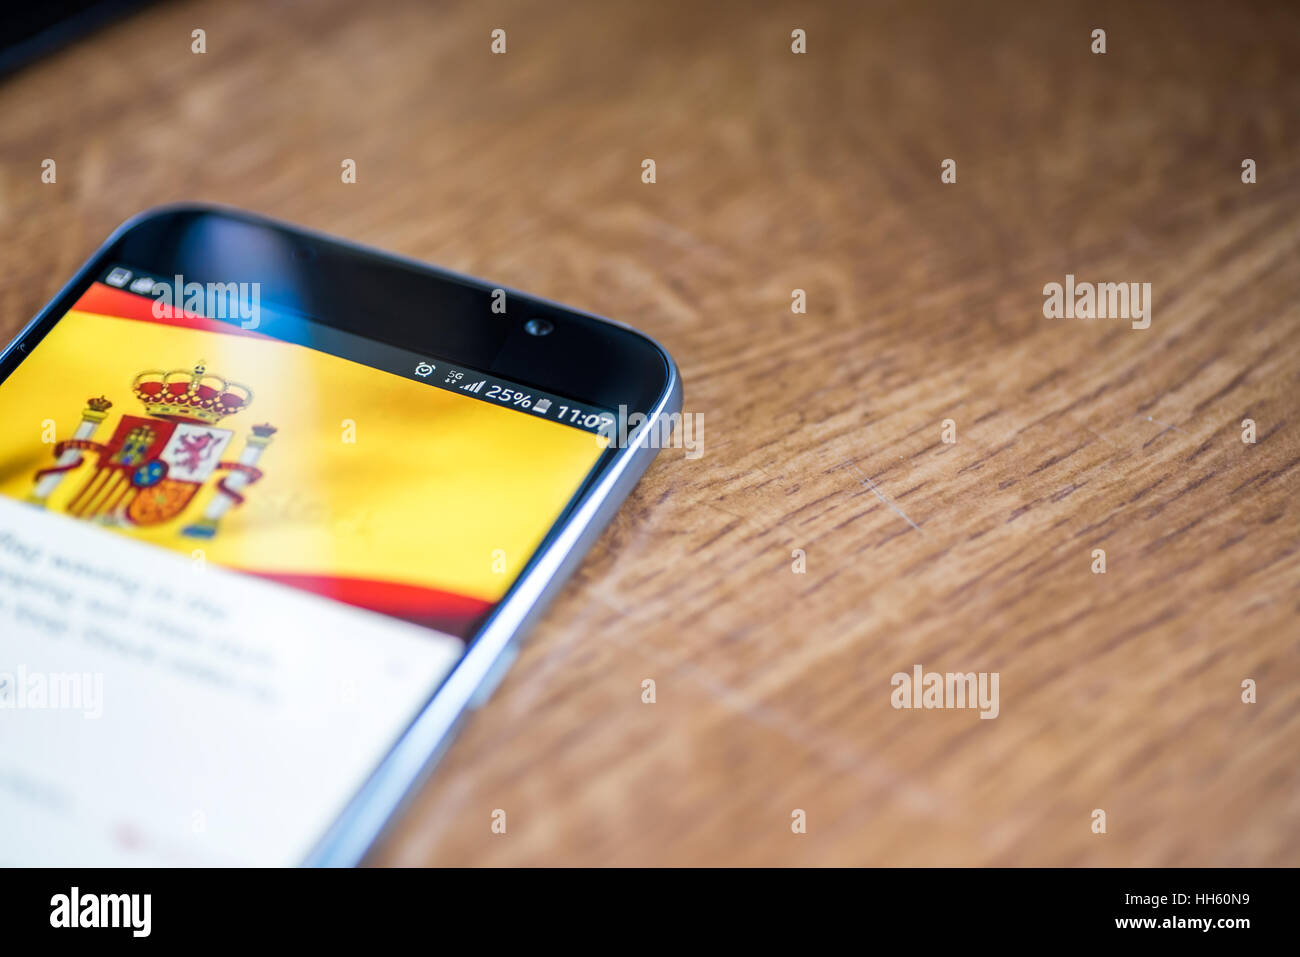 Sur fond de bois avec smartphone 5G Réseau inscription 25  % et l'Espagne drapeau sur l'écran. Banque D'Images